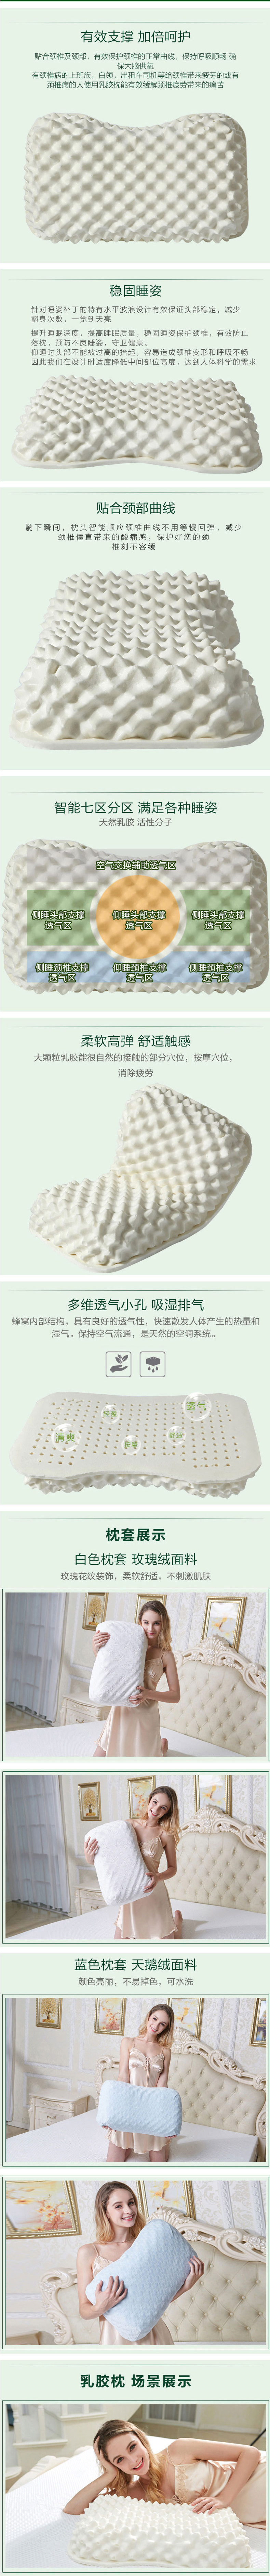 泰国乳胶天然乳胶枕保健按摩枕女士枕大颗粒按摩枕